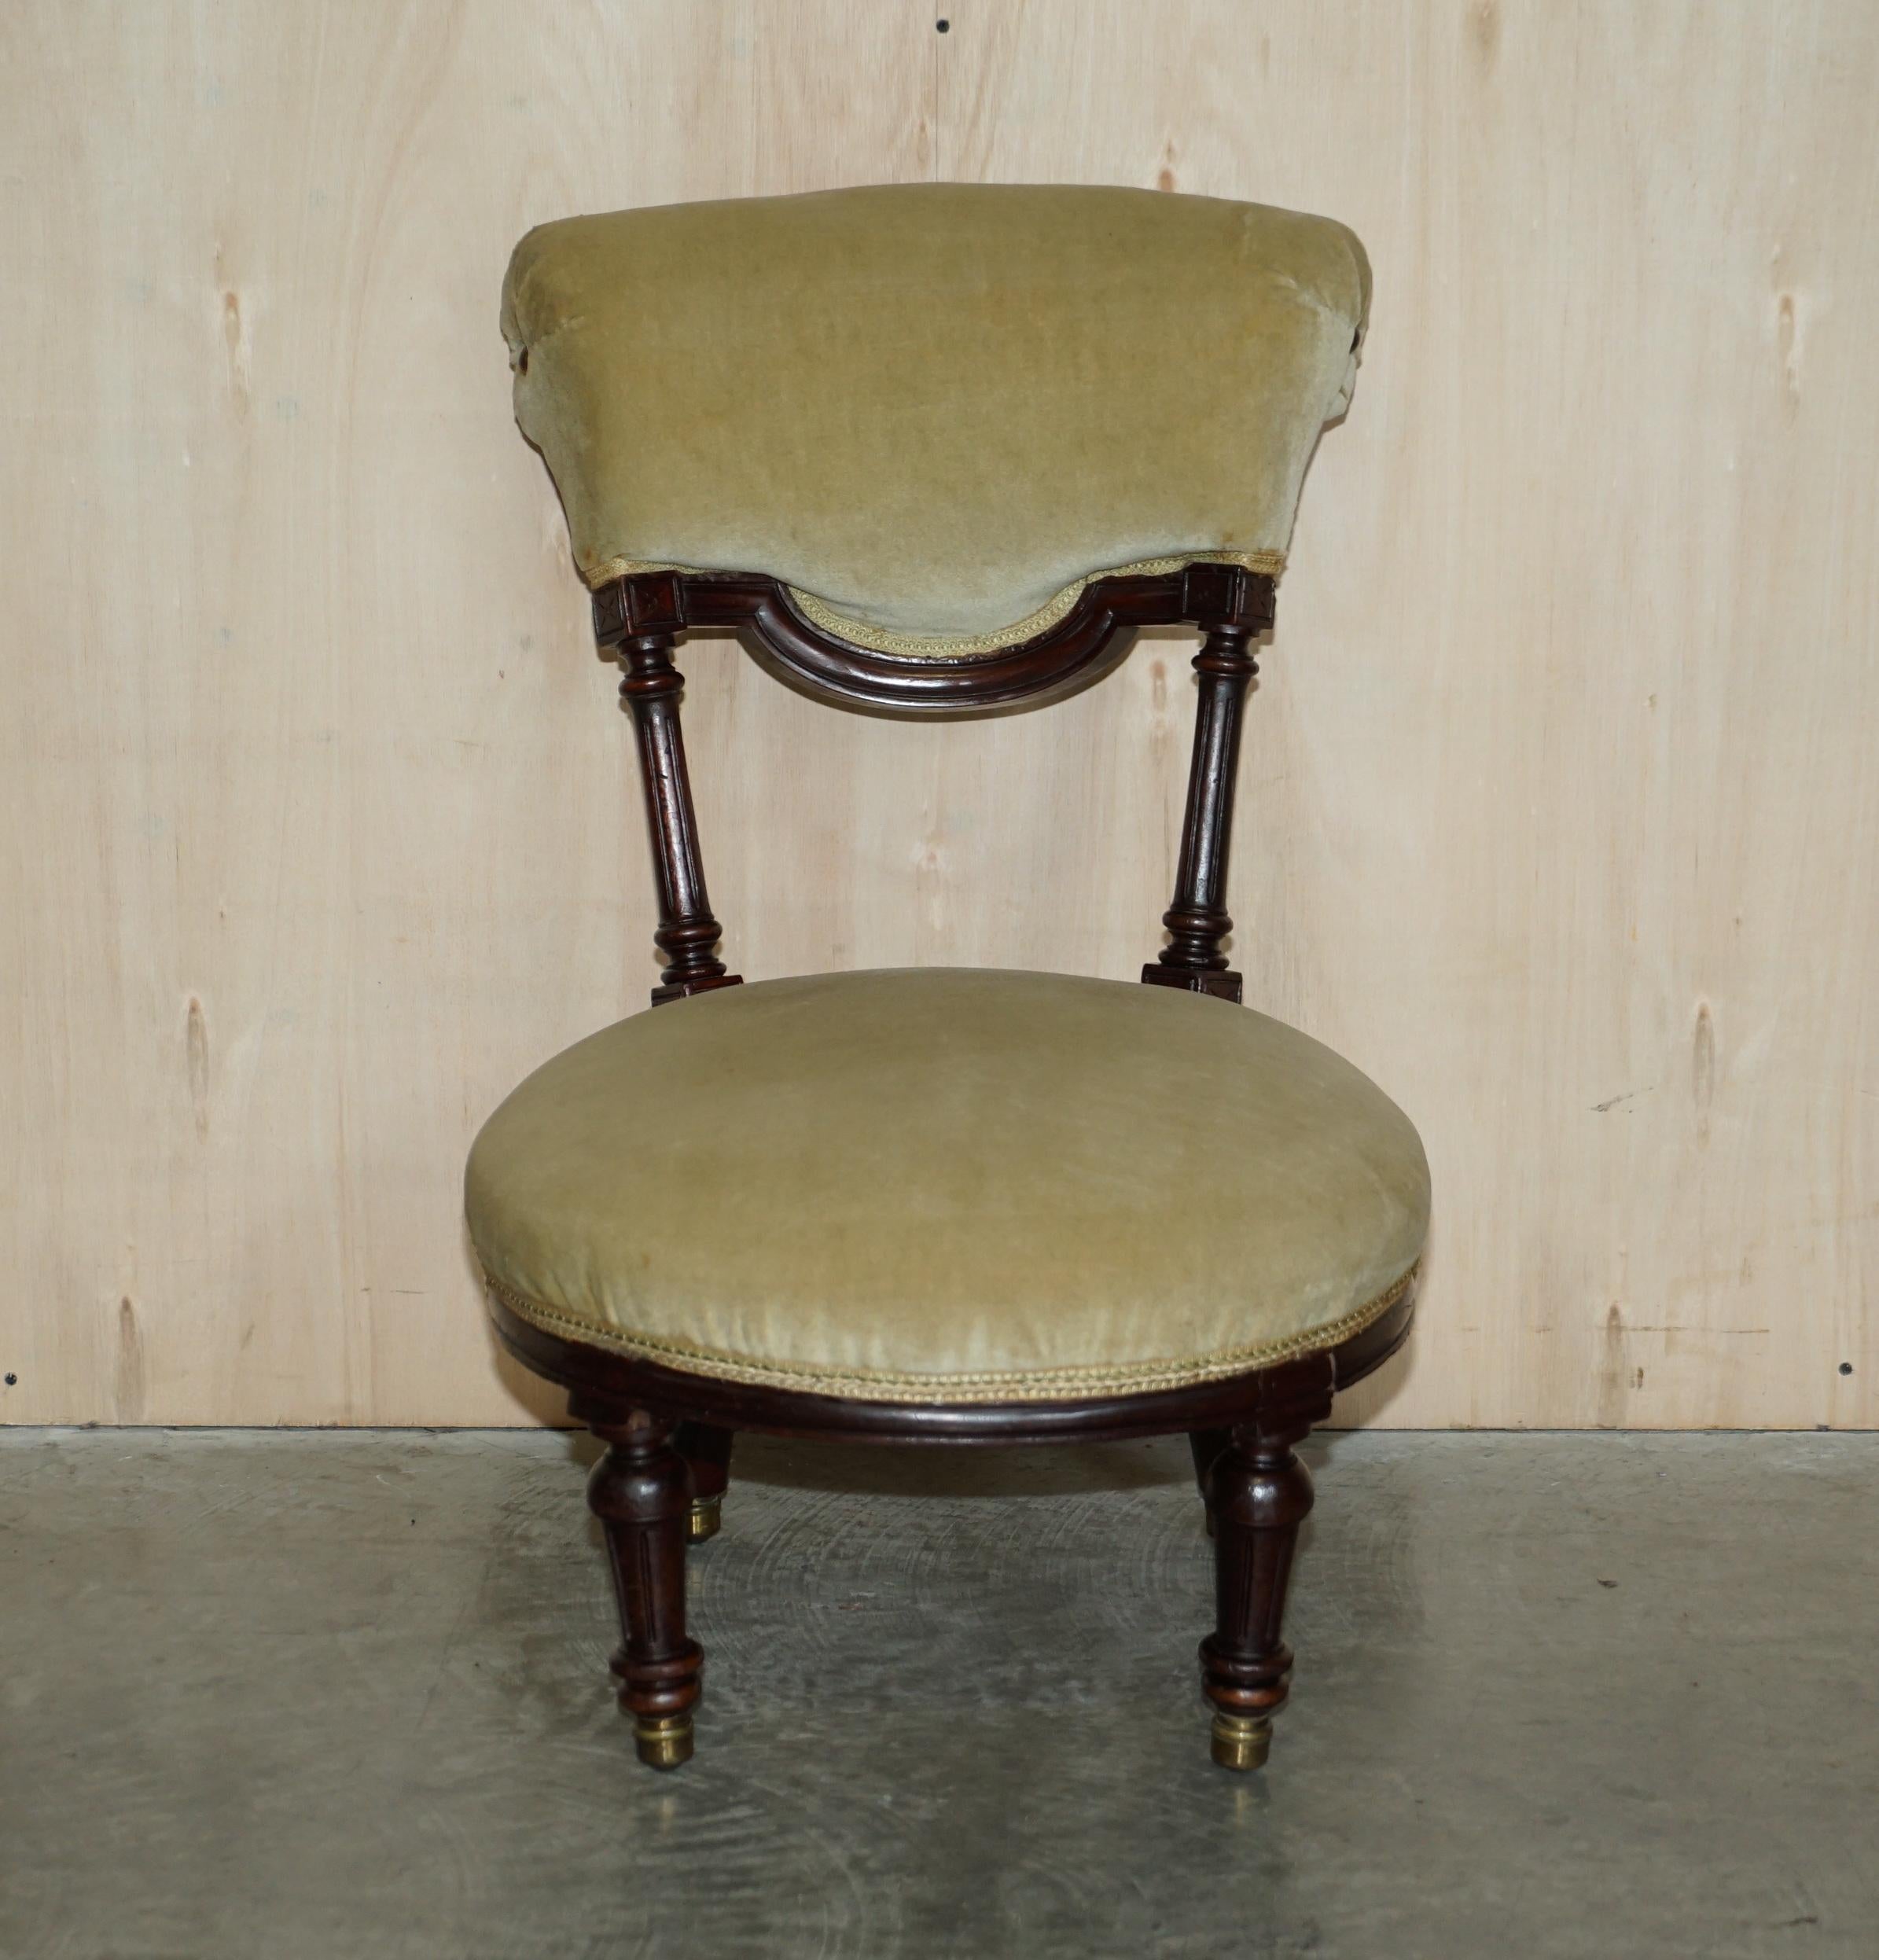 Nous avons le plaisir de proposer à la vente cette très belle chaise d'infirmière victorienne circa 1860 en acajou avec cadre et tapisserie en velours.

Il s'agit d'une chaise d'allaitement spécialement conçue pour être basse par rapport au sol